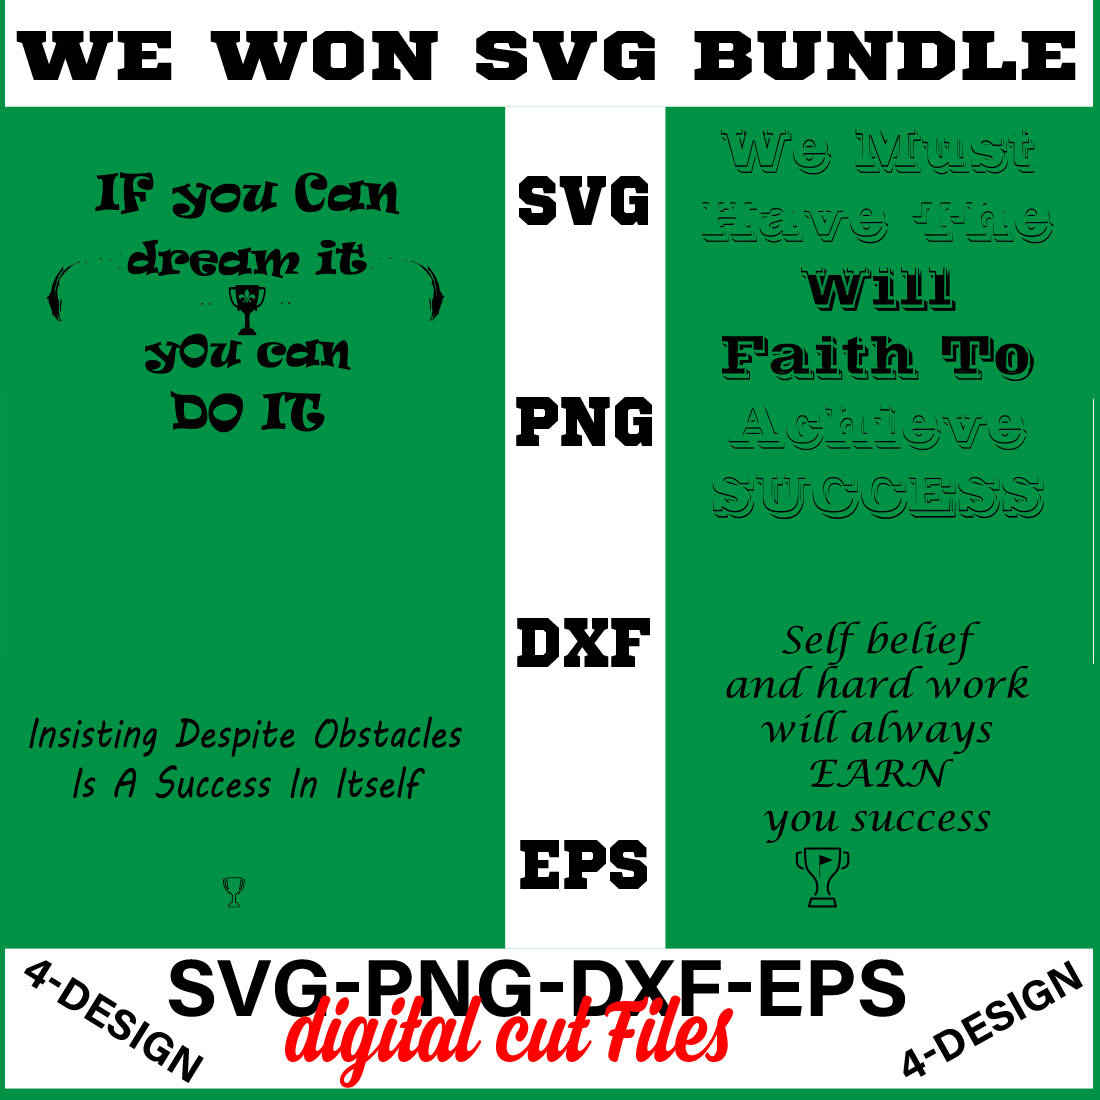 We Won SVG T-shirt Design Bundle Volume-05 cover image.